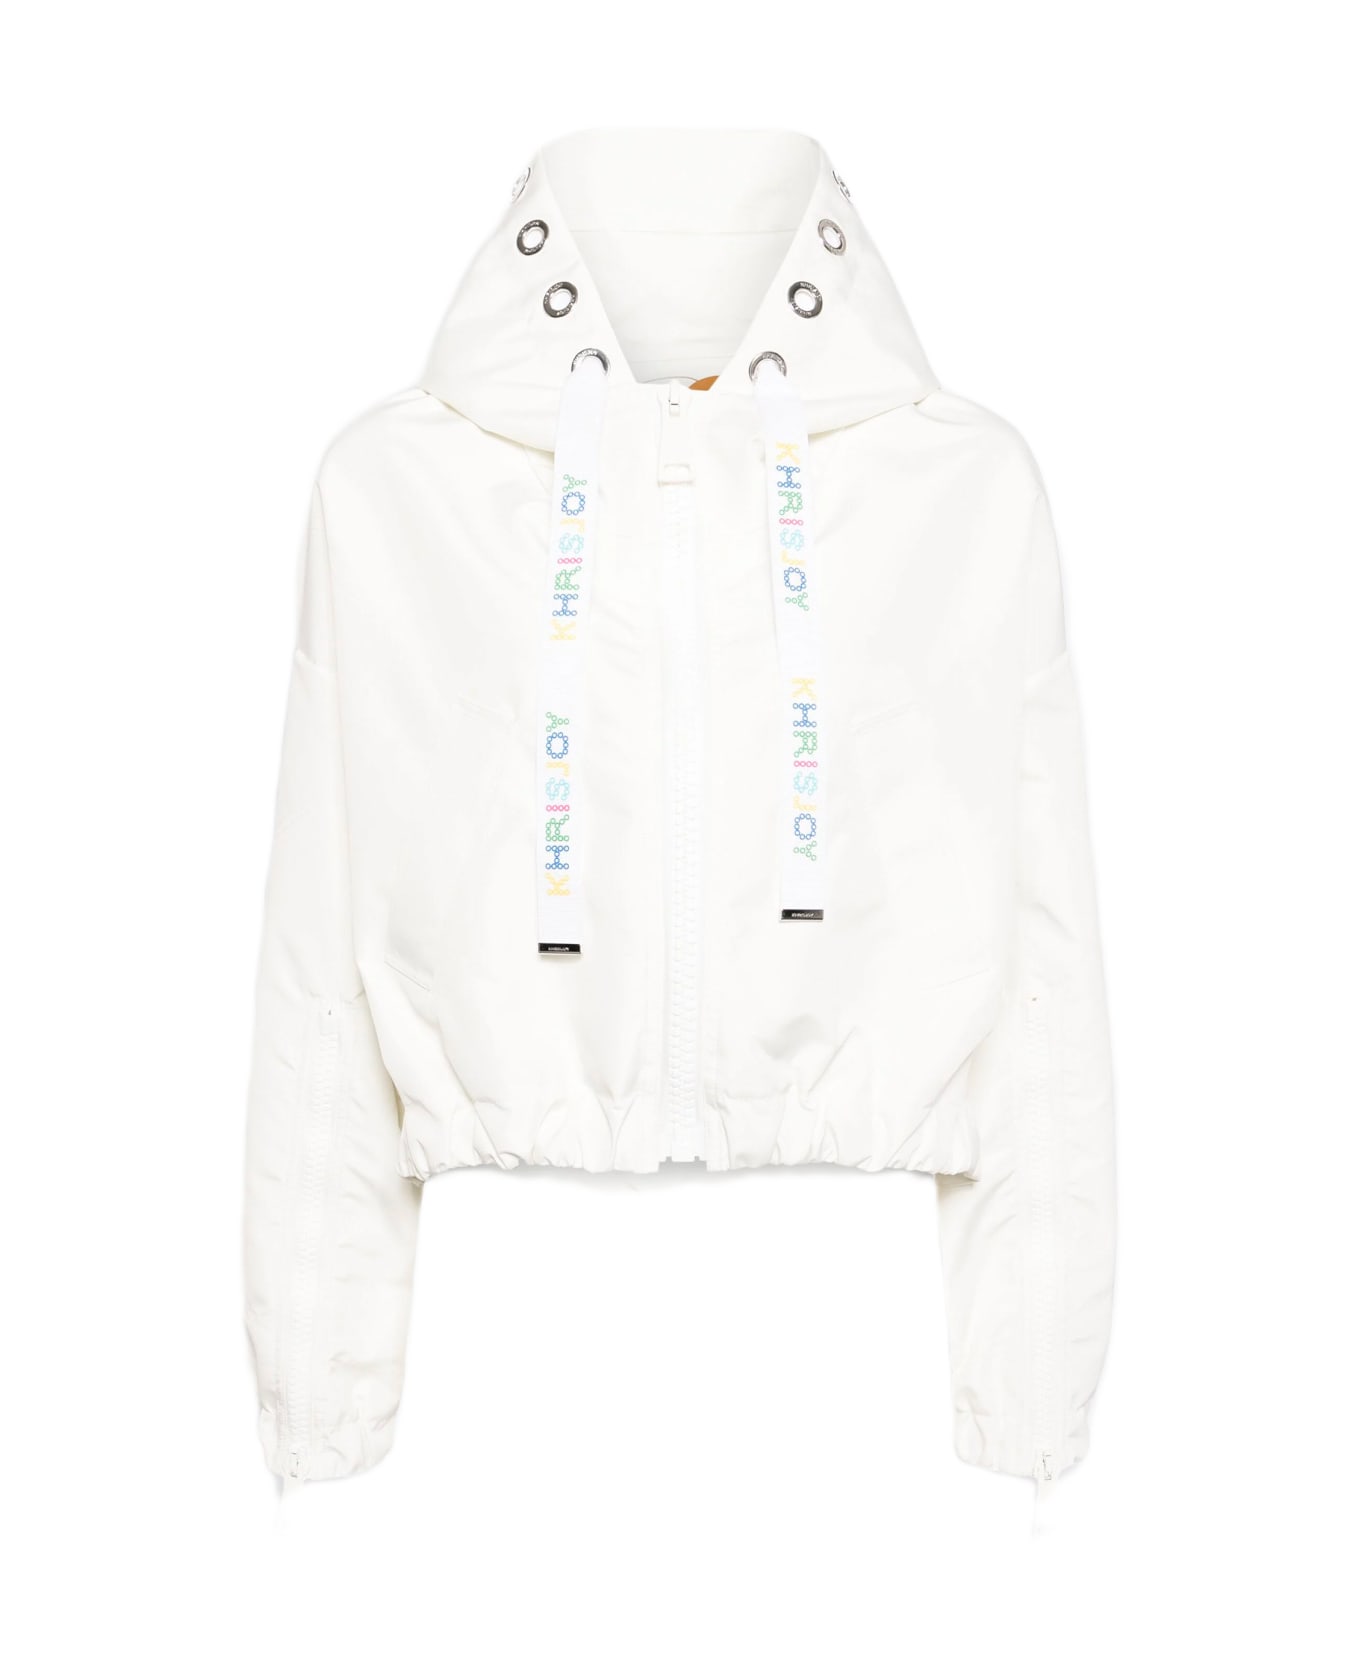 Khrisjoy New Khris Crop Windbreaker Off white nylon hooded windproof jacket - New Khris Crop Windbreaker - Bianco